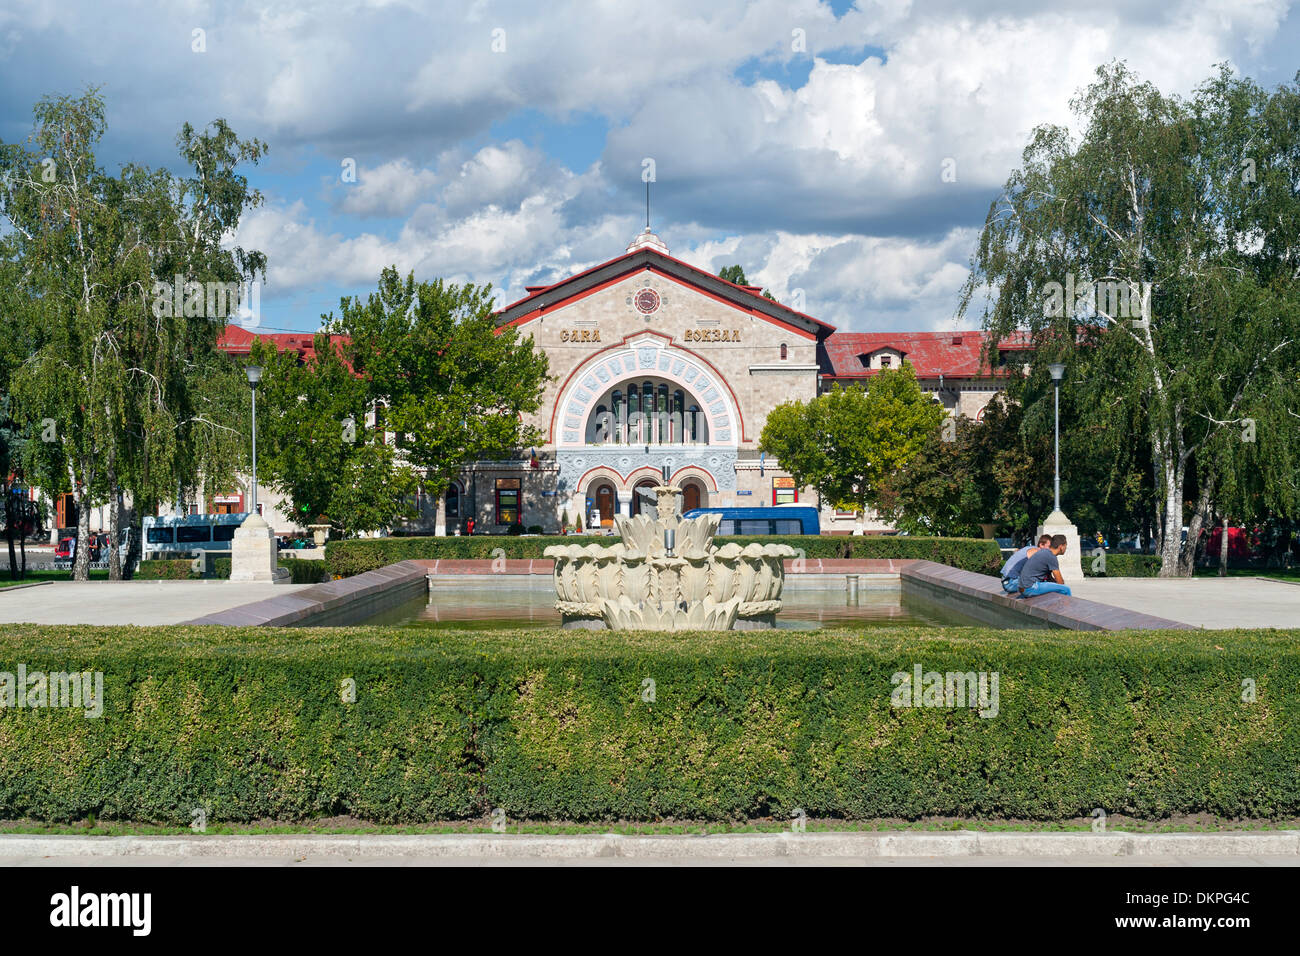 La stazione ferroviaria di Chisinau, la capitale della Moldova in Europa Orientale. Foto Stock